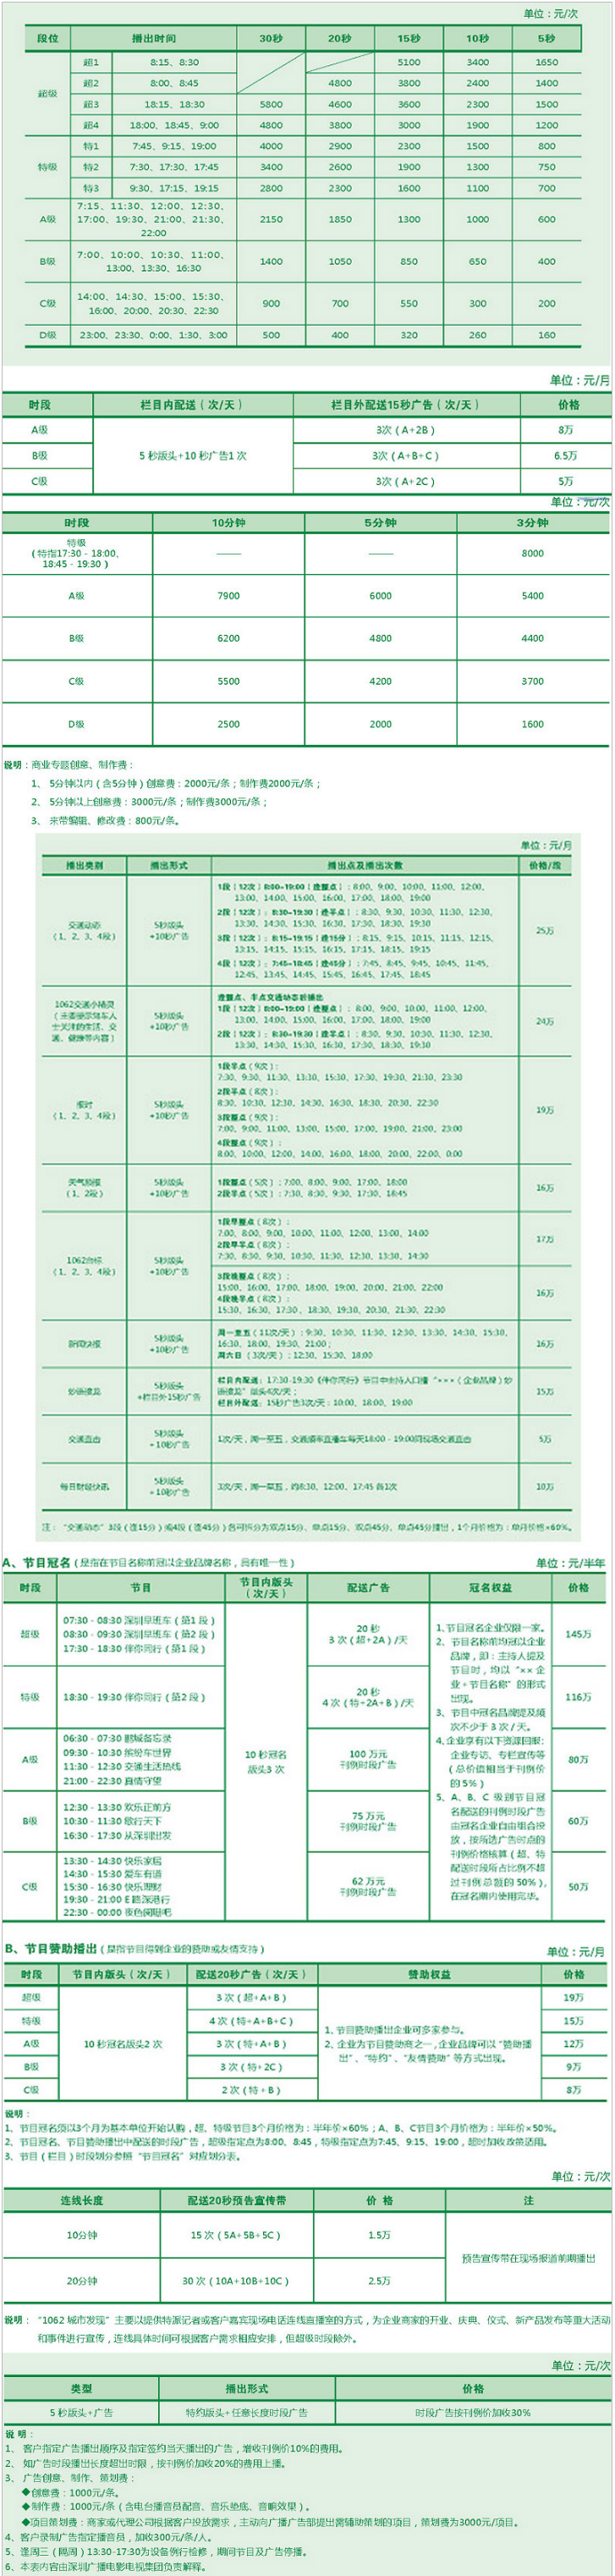 2010深圳人民广播电台交通频率 FM106.2广告报价表.png